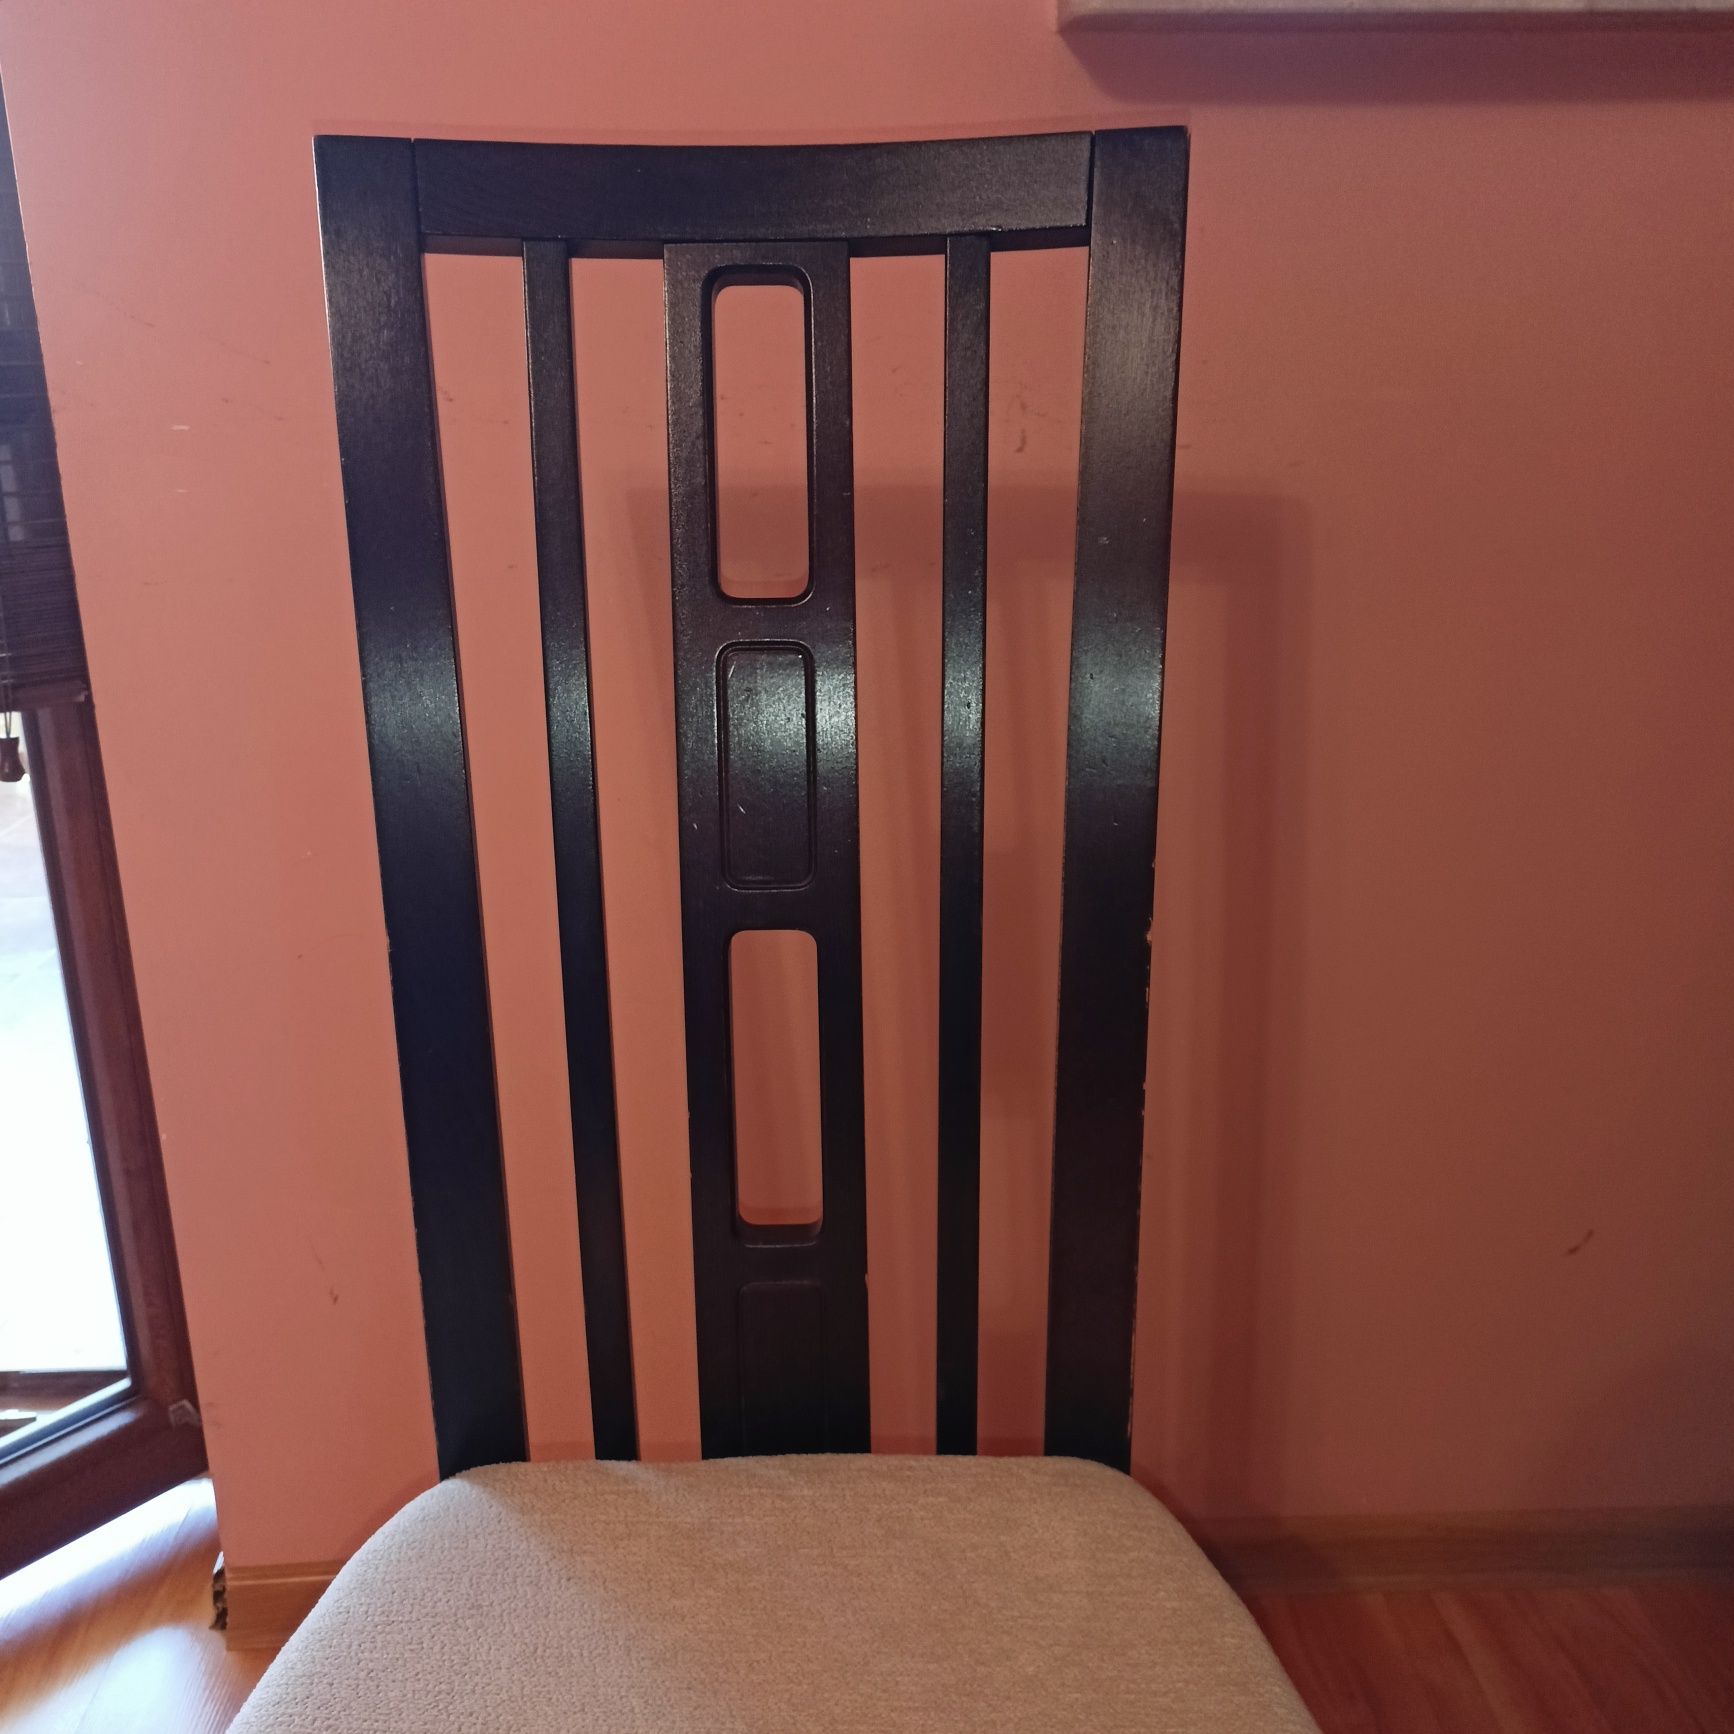 Krzeslo drewniane (6 sztuk)